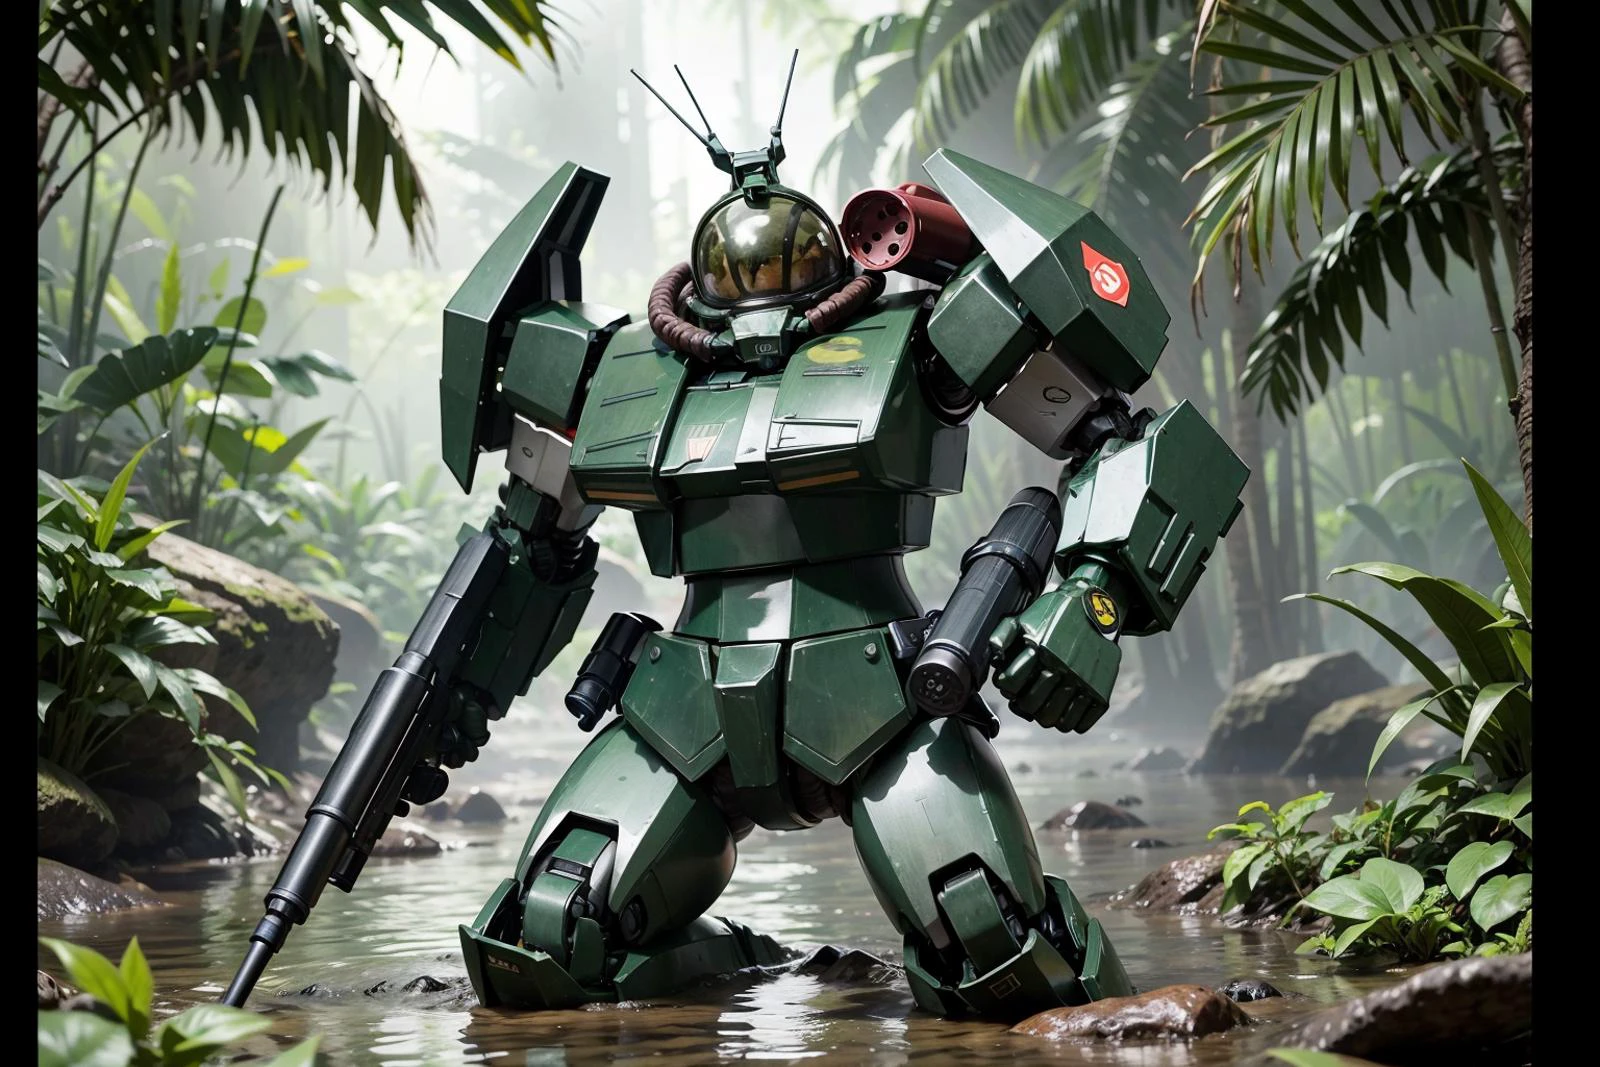 RAW-Foto eines riesigen Roboters, der eine Waffe in der Hand hält, knietief durch einen tropischen Sumpf waten